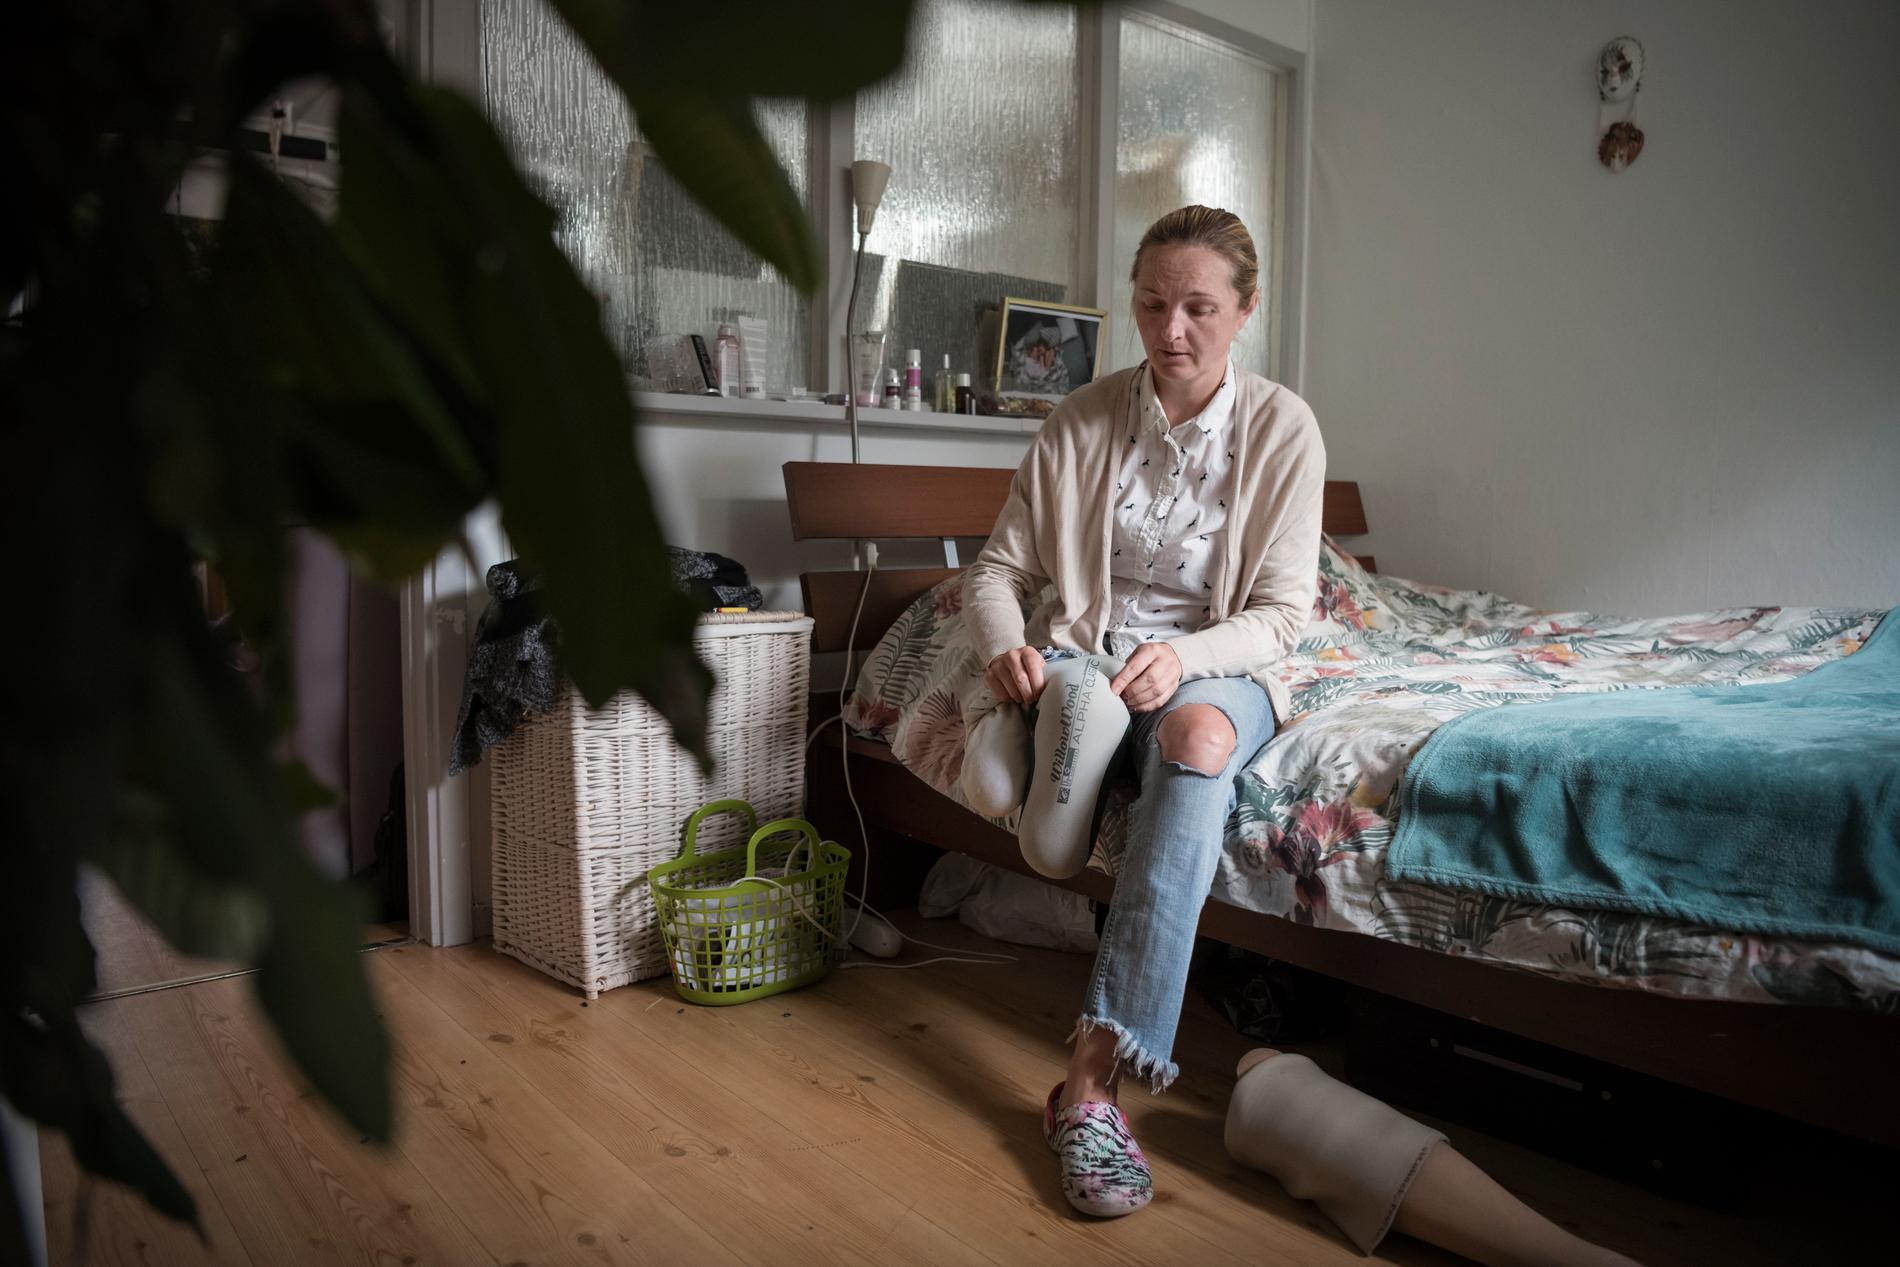 Vid terrorattacken blev Iryna av med sitt högra ben, sedan sjukhusvistelsen har hon fått byta protes var tredje månad för att den ska passa benstumpen. 